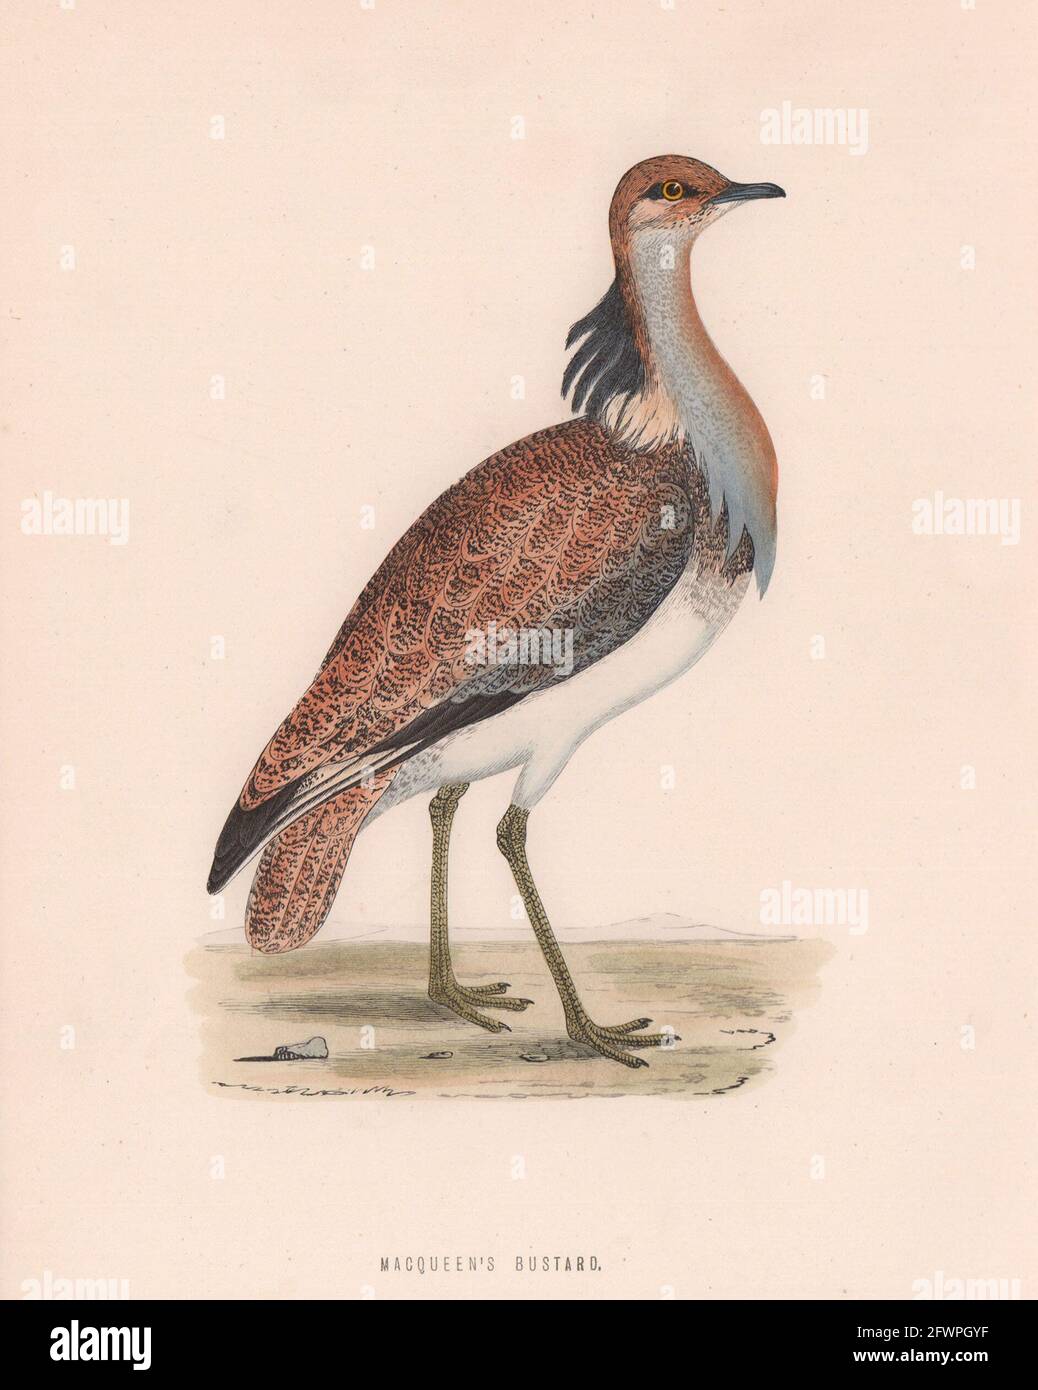 MacQueen's Bustard. Morris's British Birds. Impression couleur antique 1870 Banque D'Images